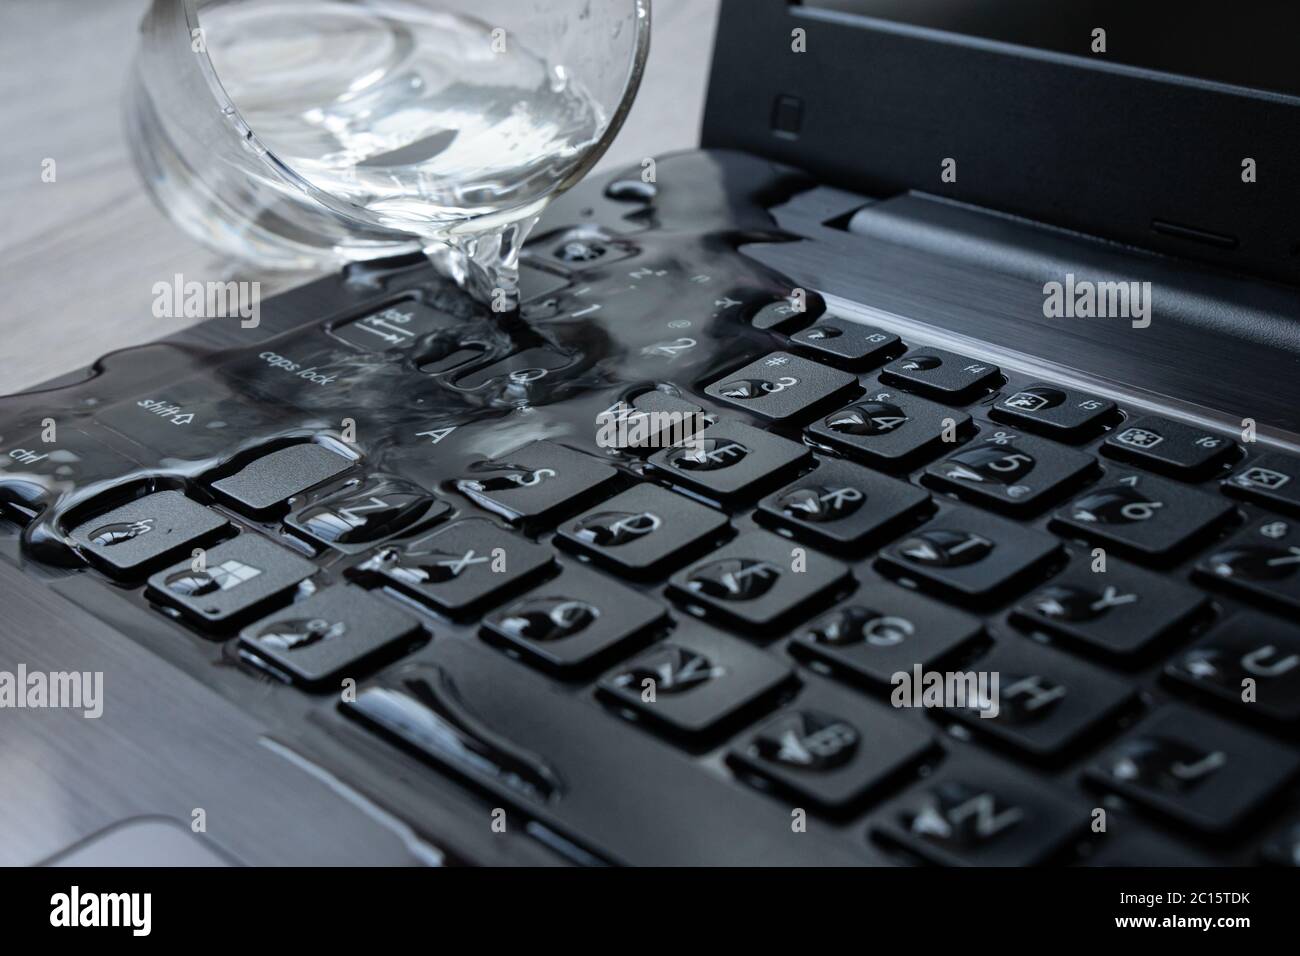 Wasser wird versehentlich über den Laptop verschüttet. Die Tastatur ist  voll mit Flüssigkeit und der Computer ist ruiniert Stockfotografie - Alamy